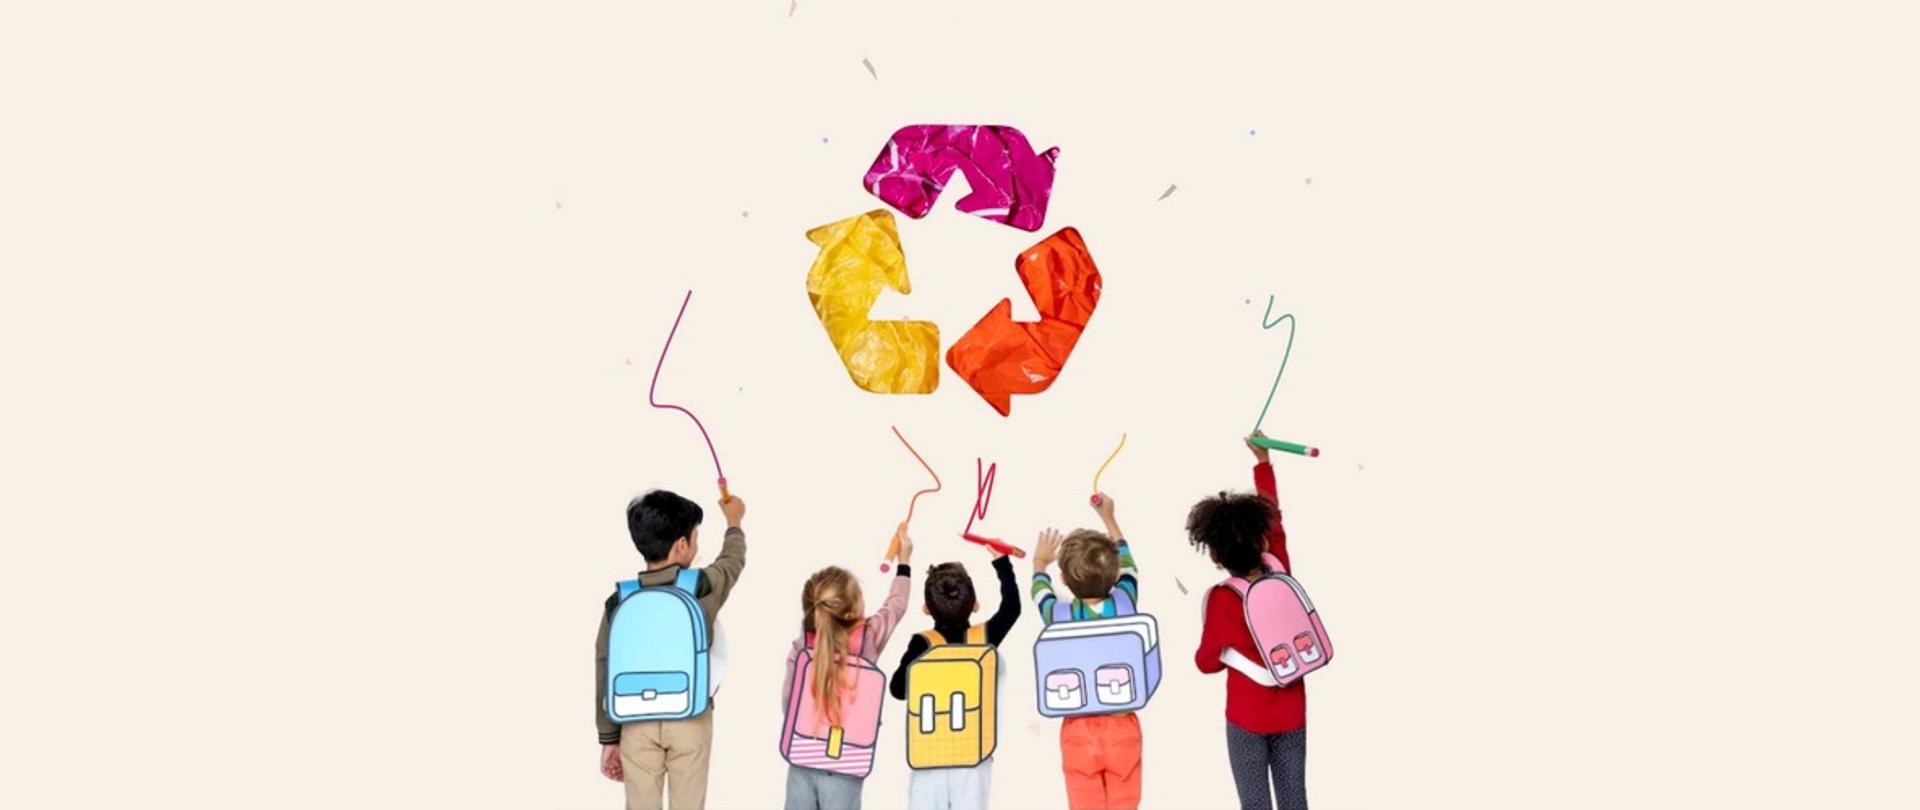 Pięcioro dzieci z dorysowanymi plecakami odwrócone tyłem rysuje kolorowe kreski na ścianie. Nad nimi kolorowy symbol recyklingu.